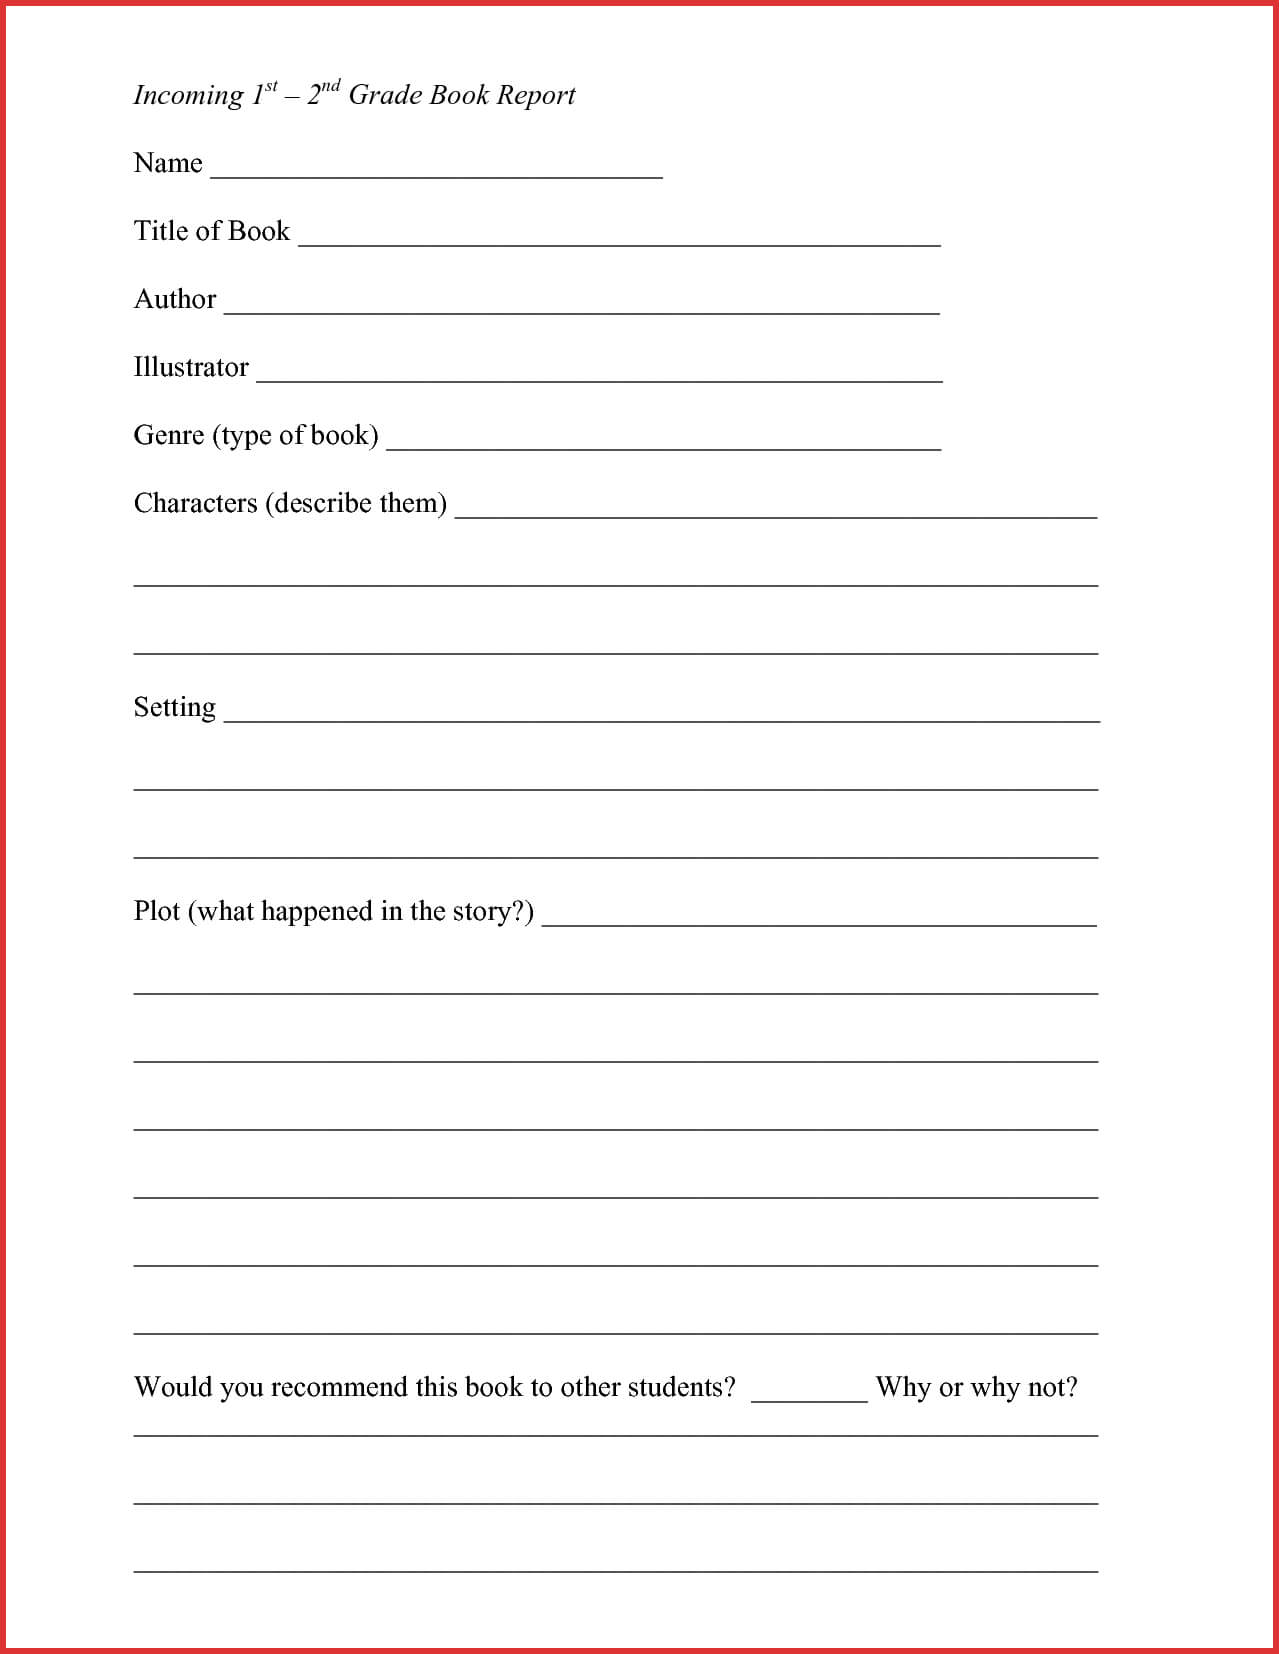 Lovely 2Nd Grade Book Report Template | Job Latter Intended For 1St Grade Book Report Template